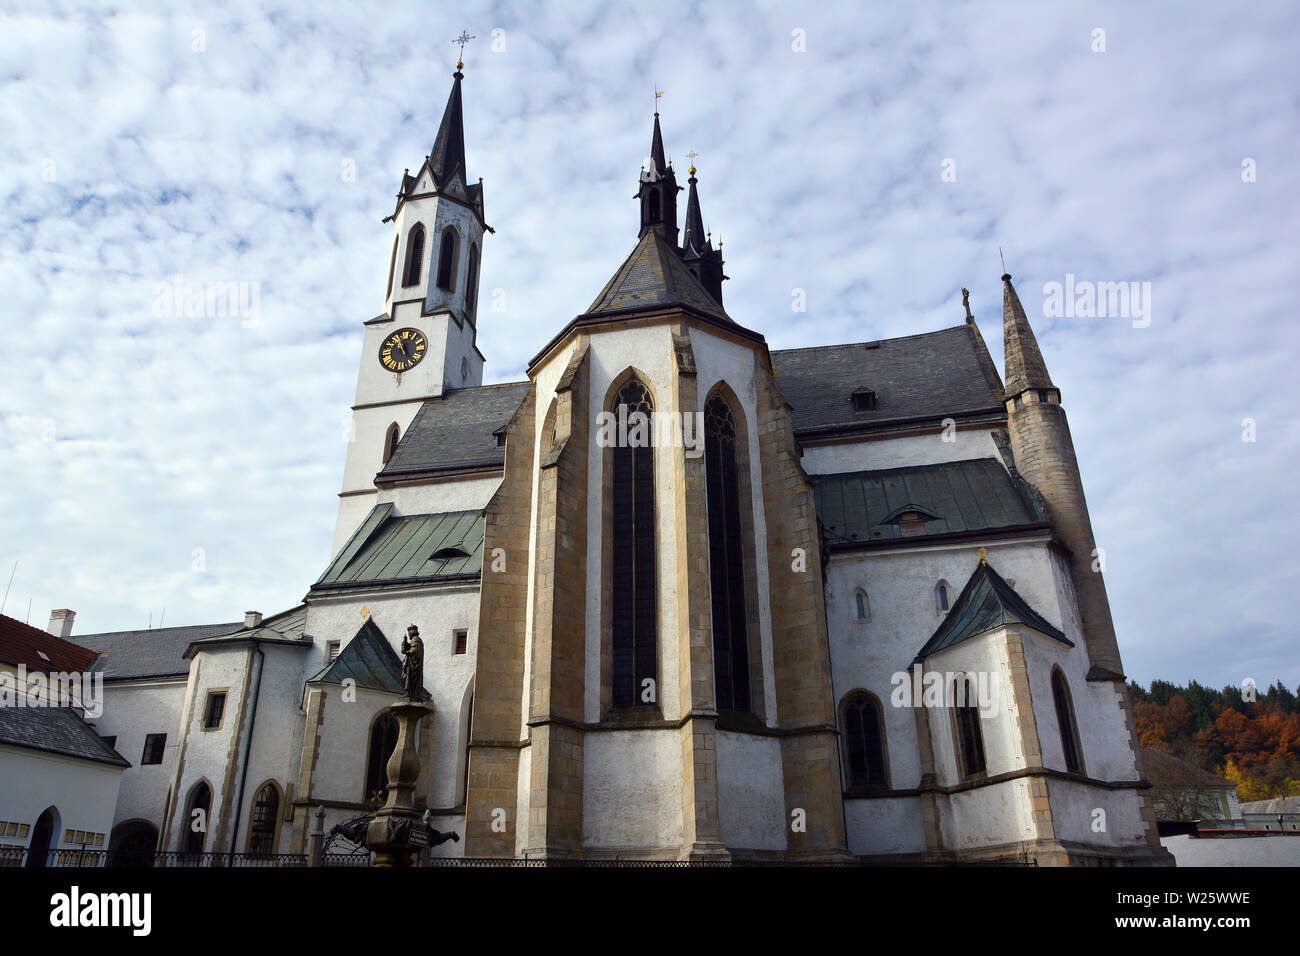 Vyšší Brod monastère ou Abbaye Hohenfurth, Vyšší Brod, République Tchèque, Europe Banque D'Images